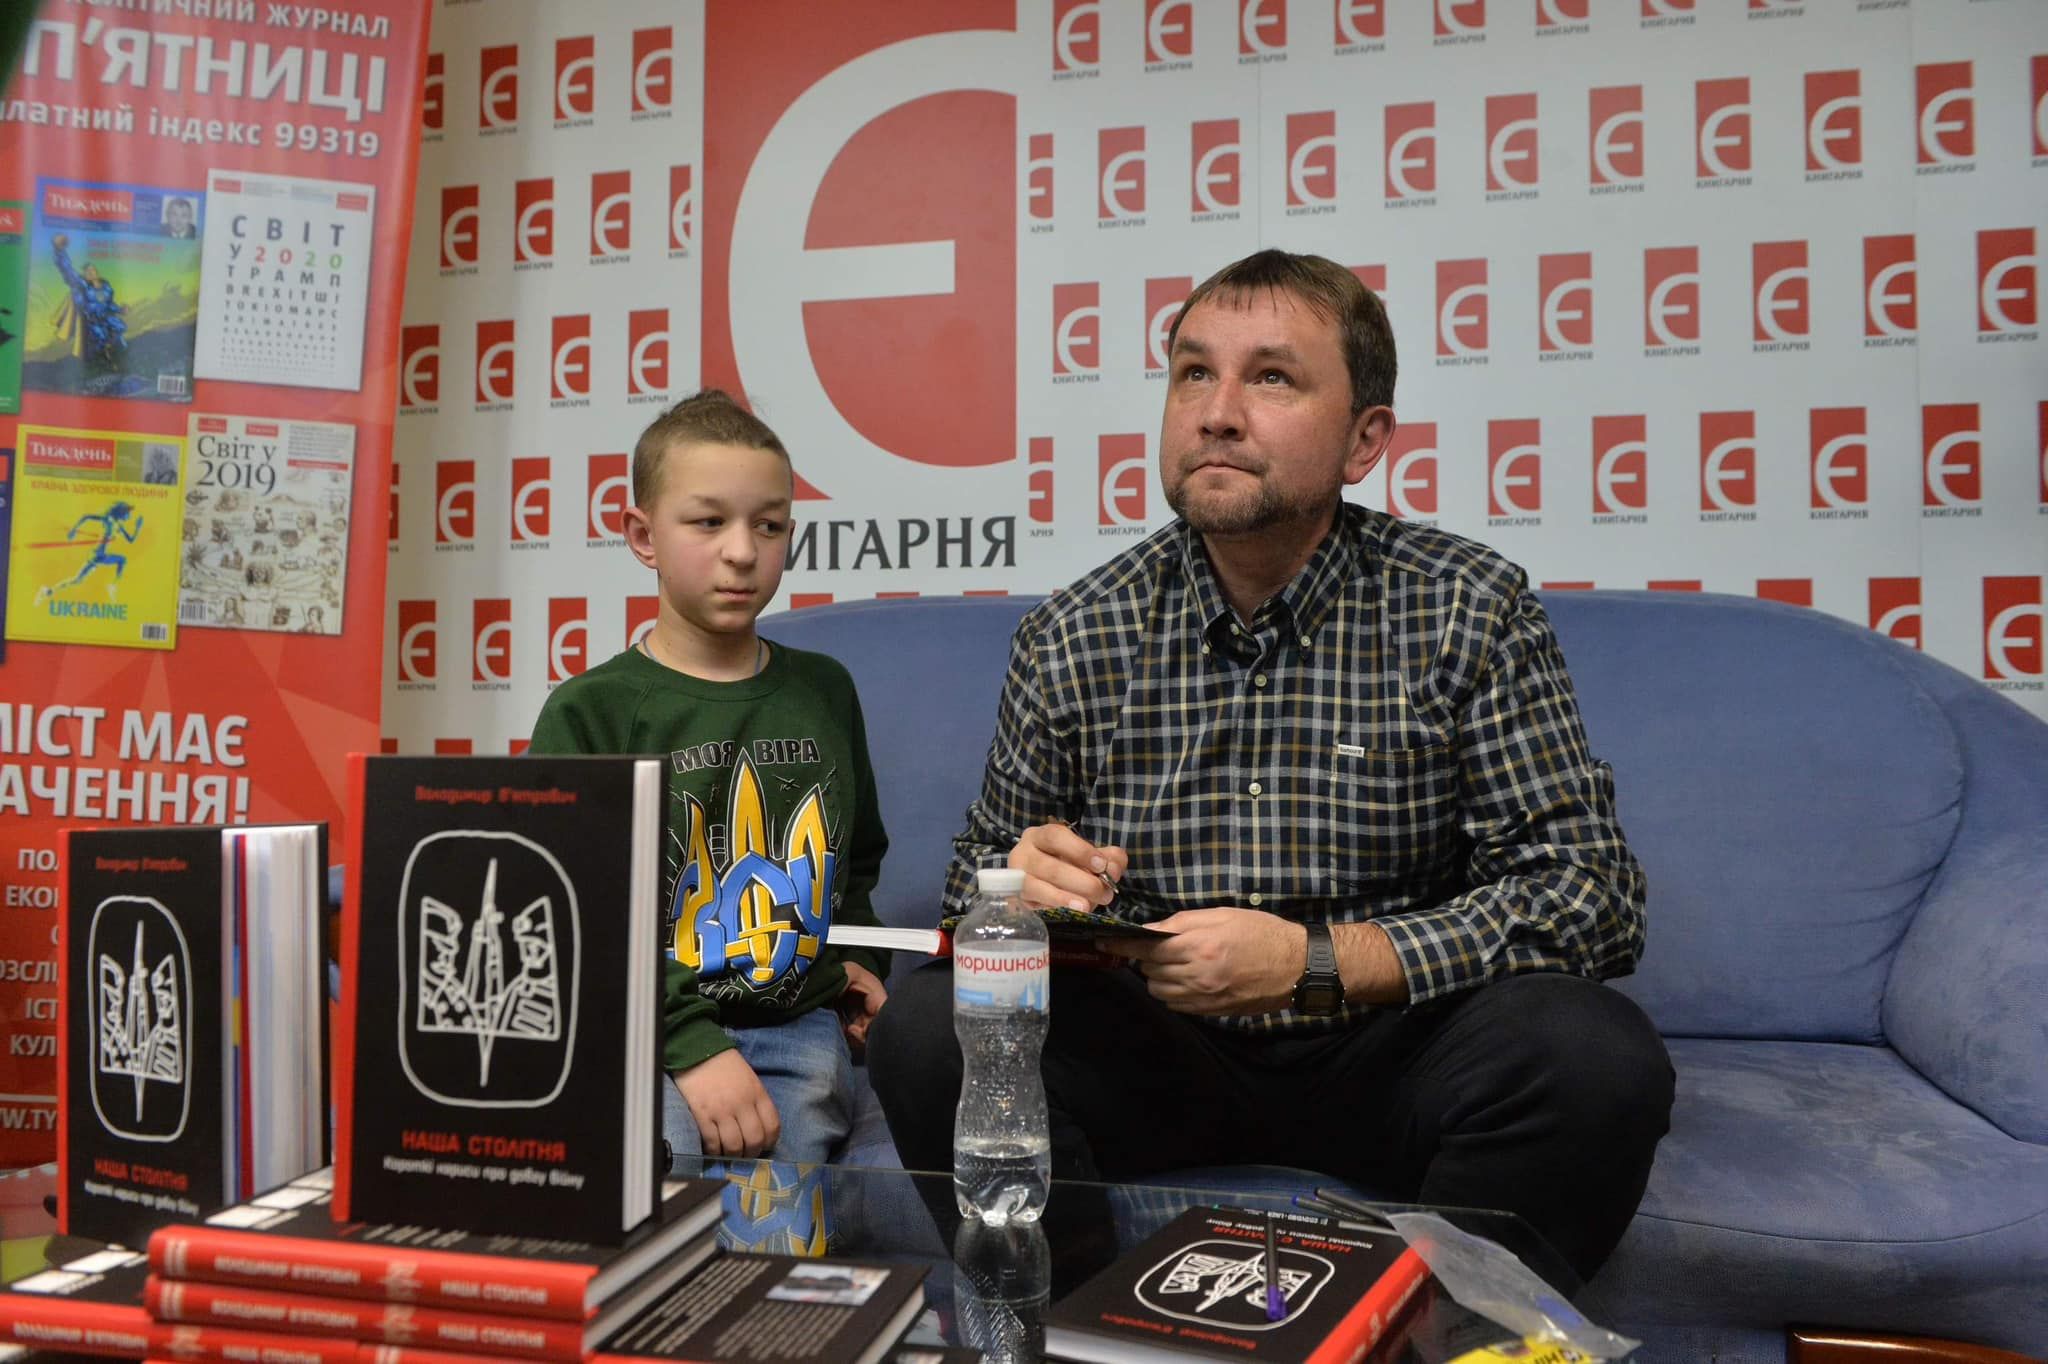 Володимир В'ятрович під час презентації своєї нової книги «Наша столітня» про війну з росією.